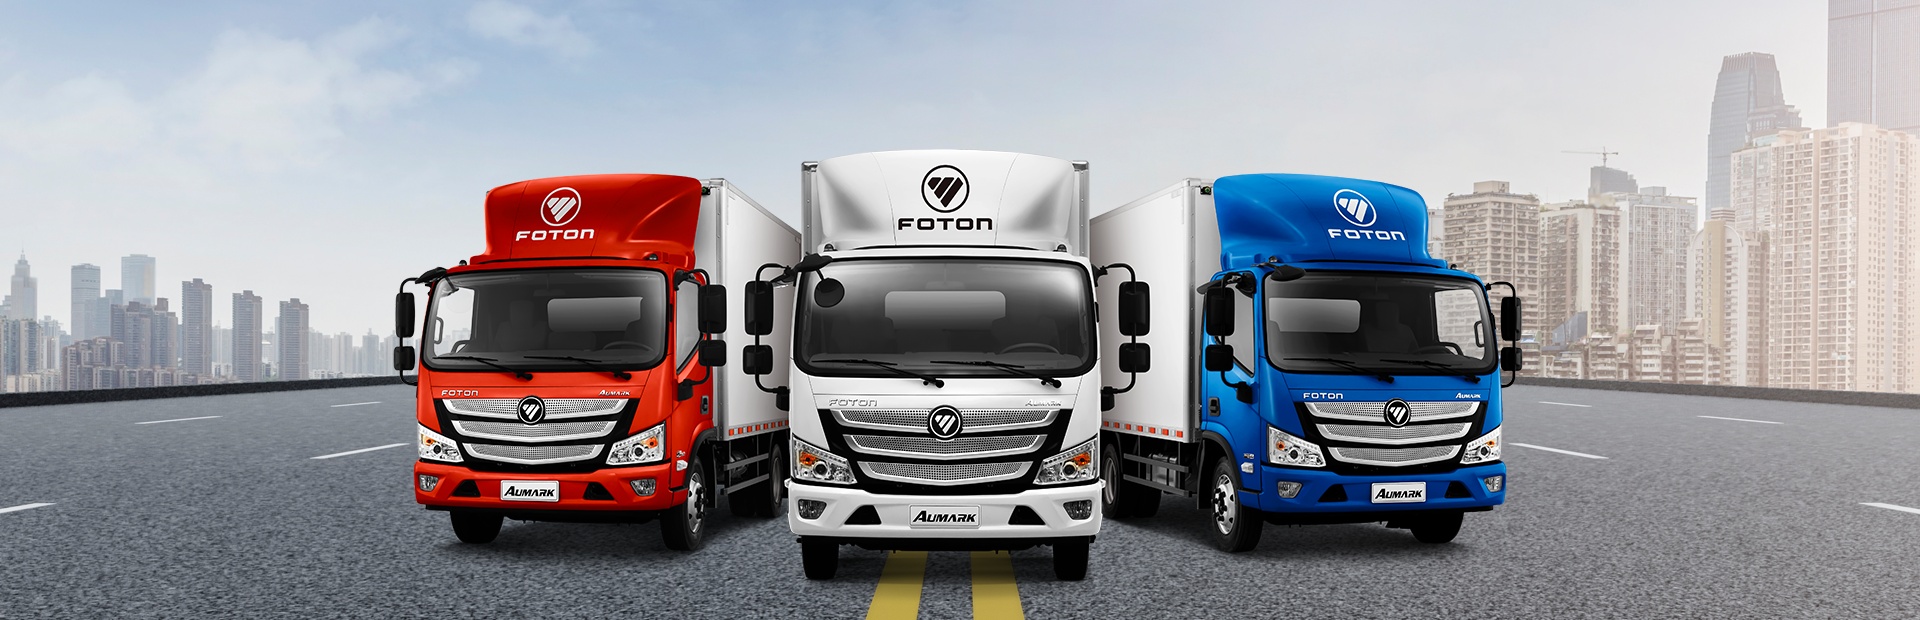 Banner com 3 caminhões da marca FOTON, um vermelho, um branco e um azul, da esquerda para a direita respectivamente.